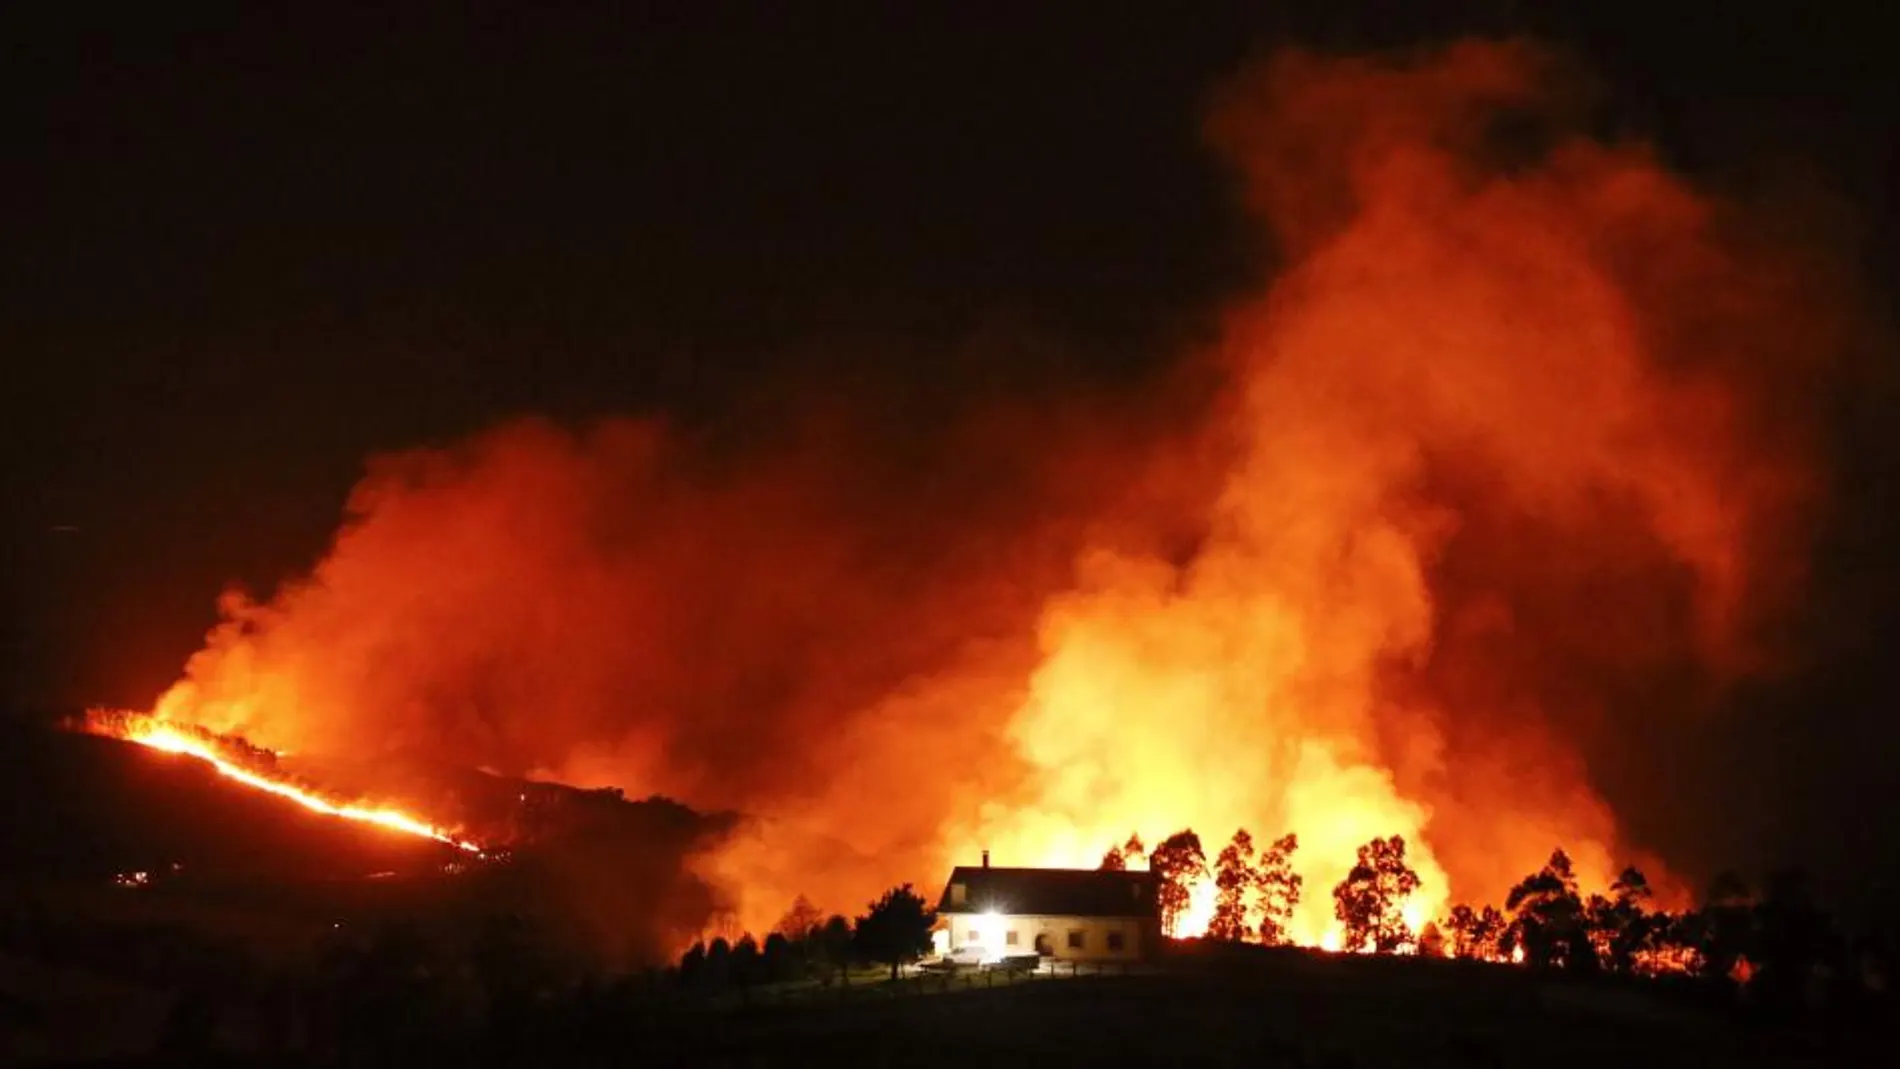 Vista general del incendio declarado en el monte Igueldo en San Sebastián, en el que ya han ardido 50 hectáreas de la ladera orientada al mar